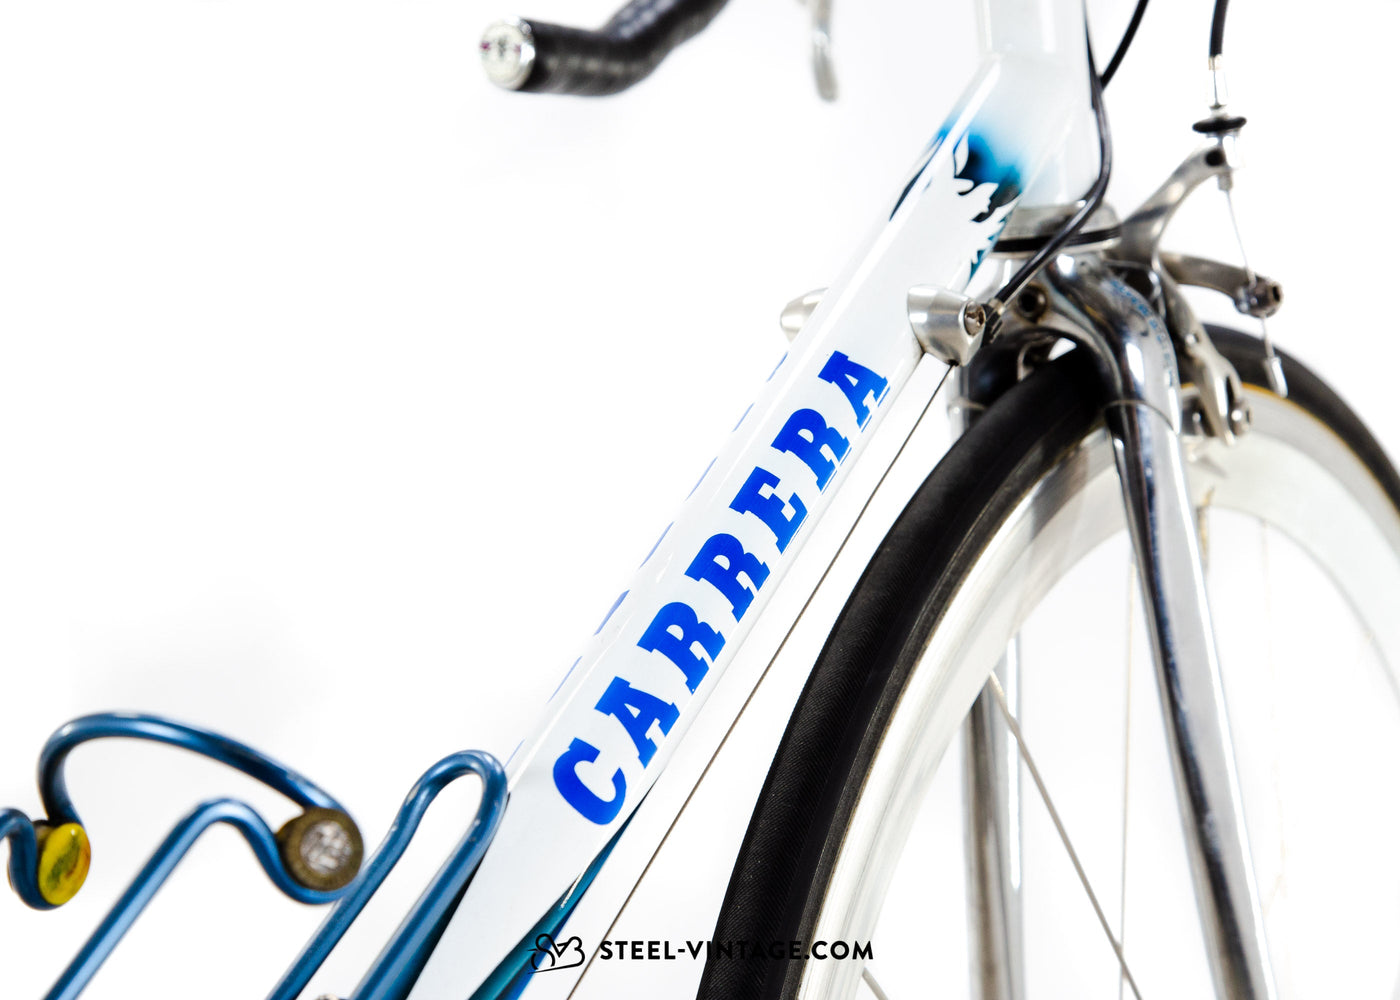 Carrera Podium Team Tassoni Road Bike 1995 - Steel Vintage Bikes